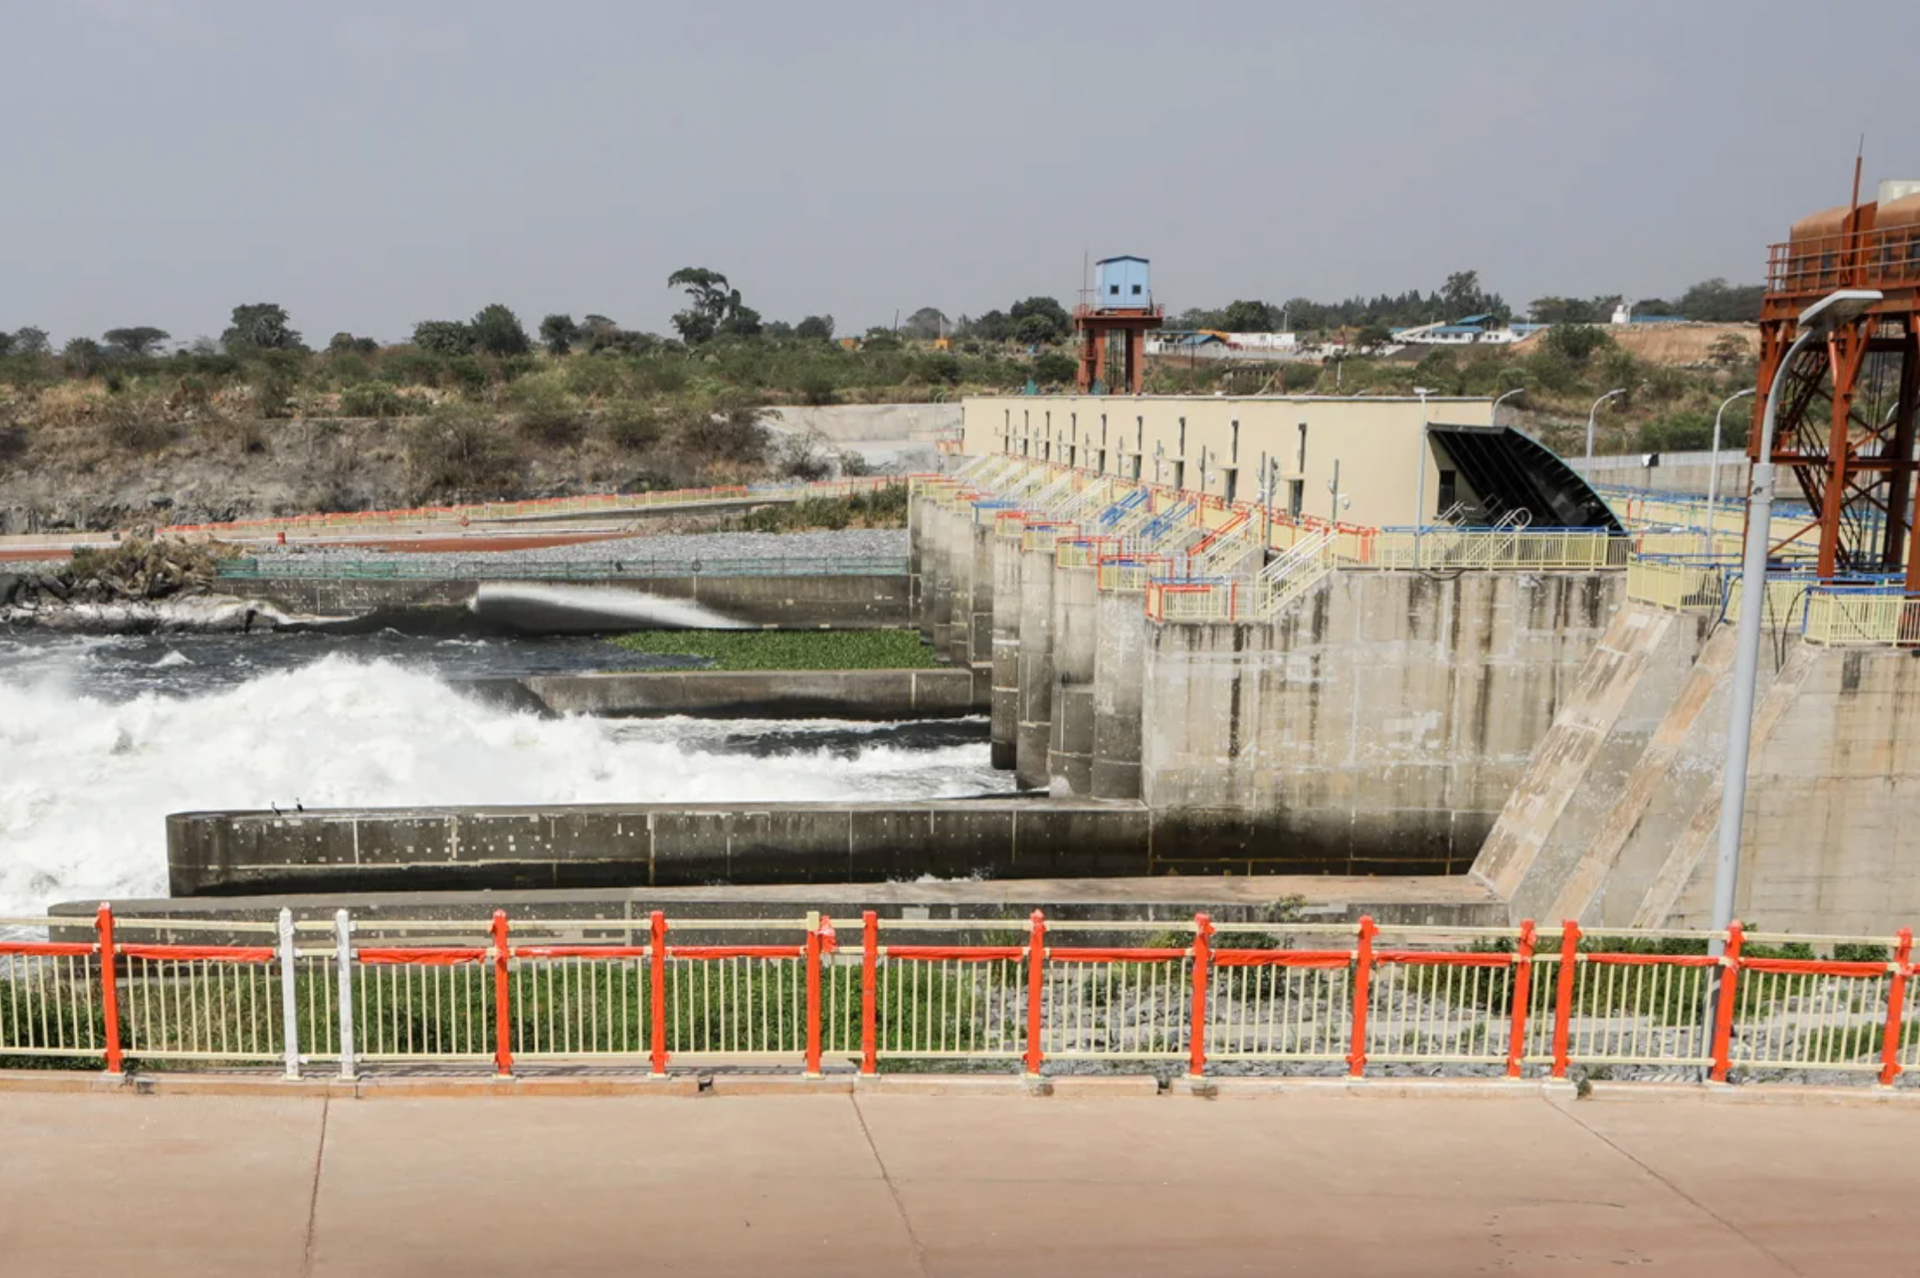 Đập Karuma do Trung Quốc hỗ trợ tại Nhà máy thủy điện Karuma ở Kiryandongo, Uganda - Ảnh: CNN